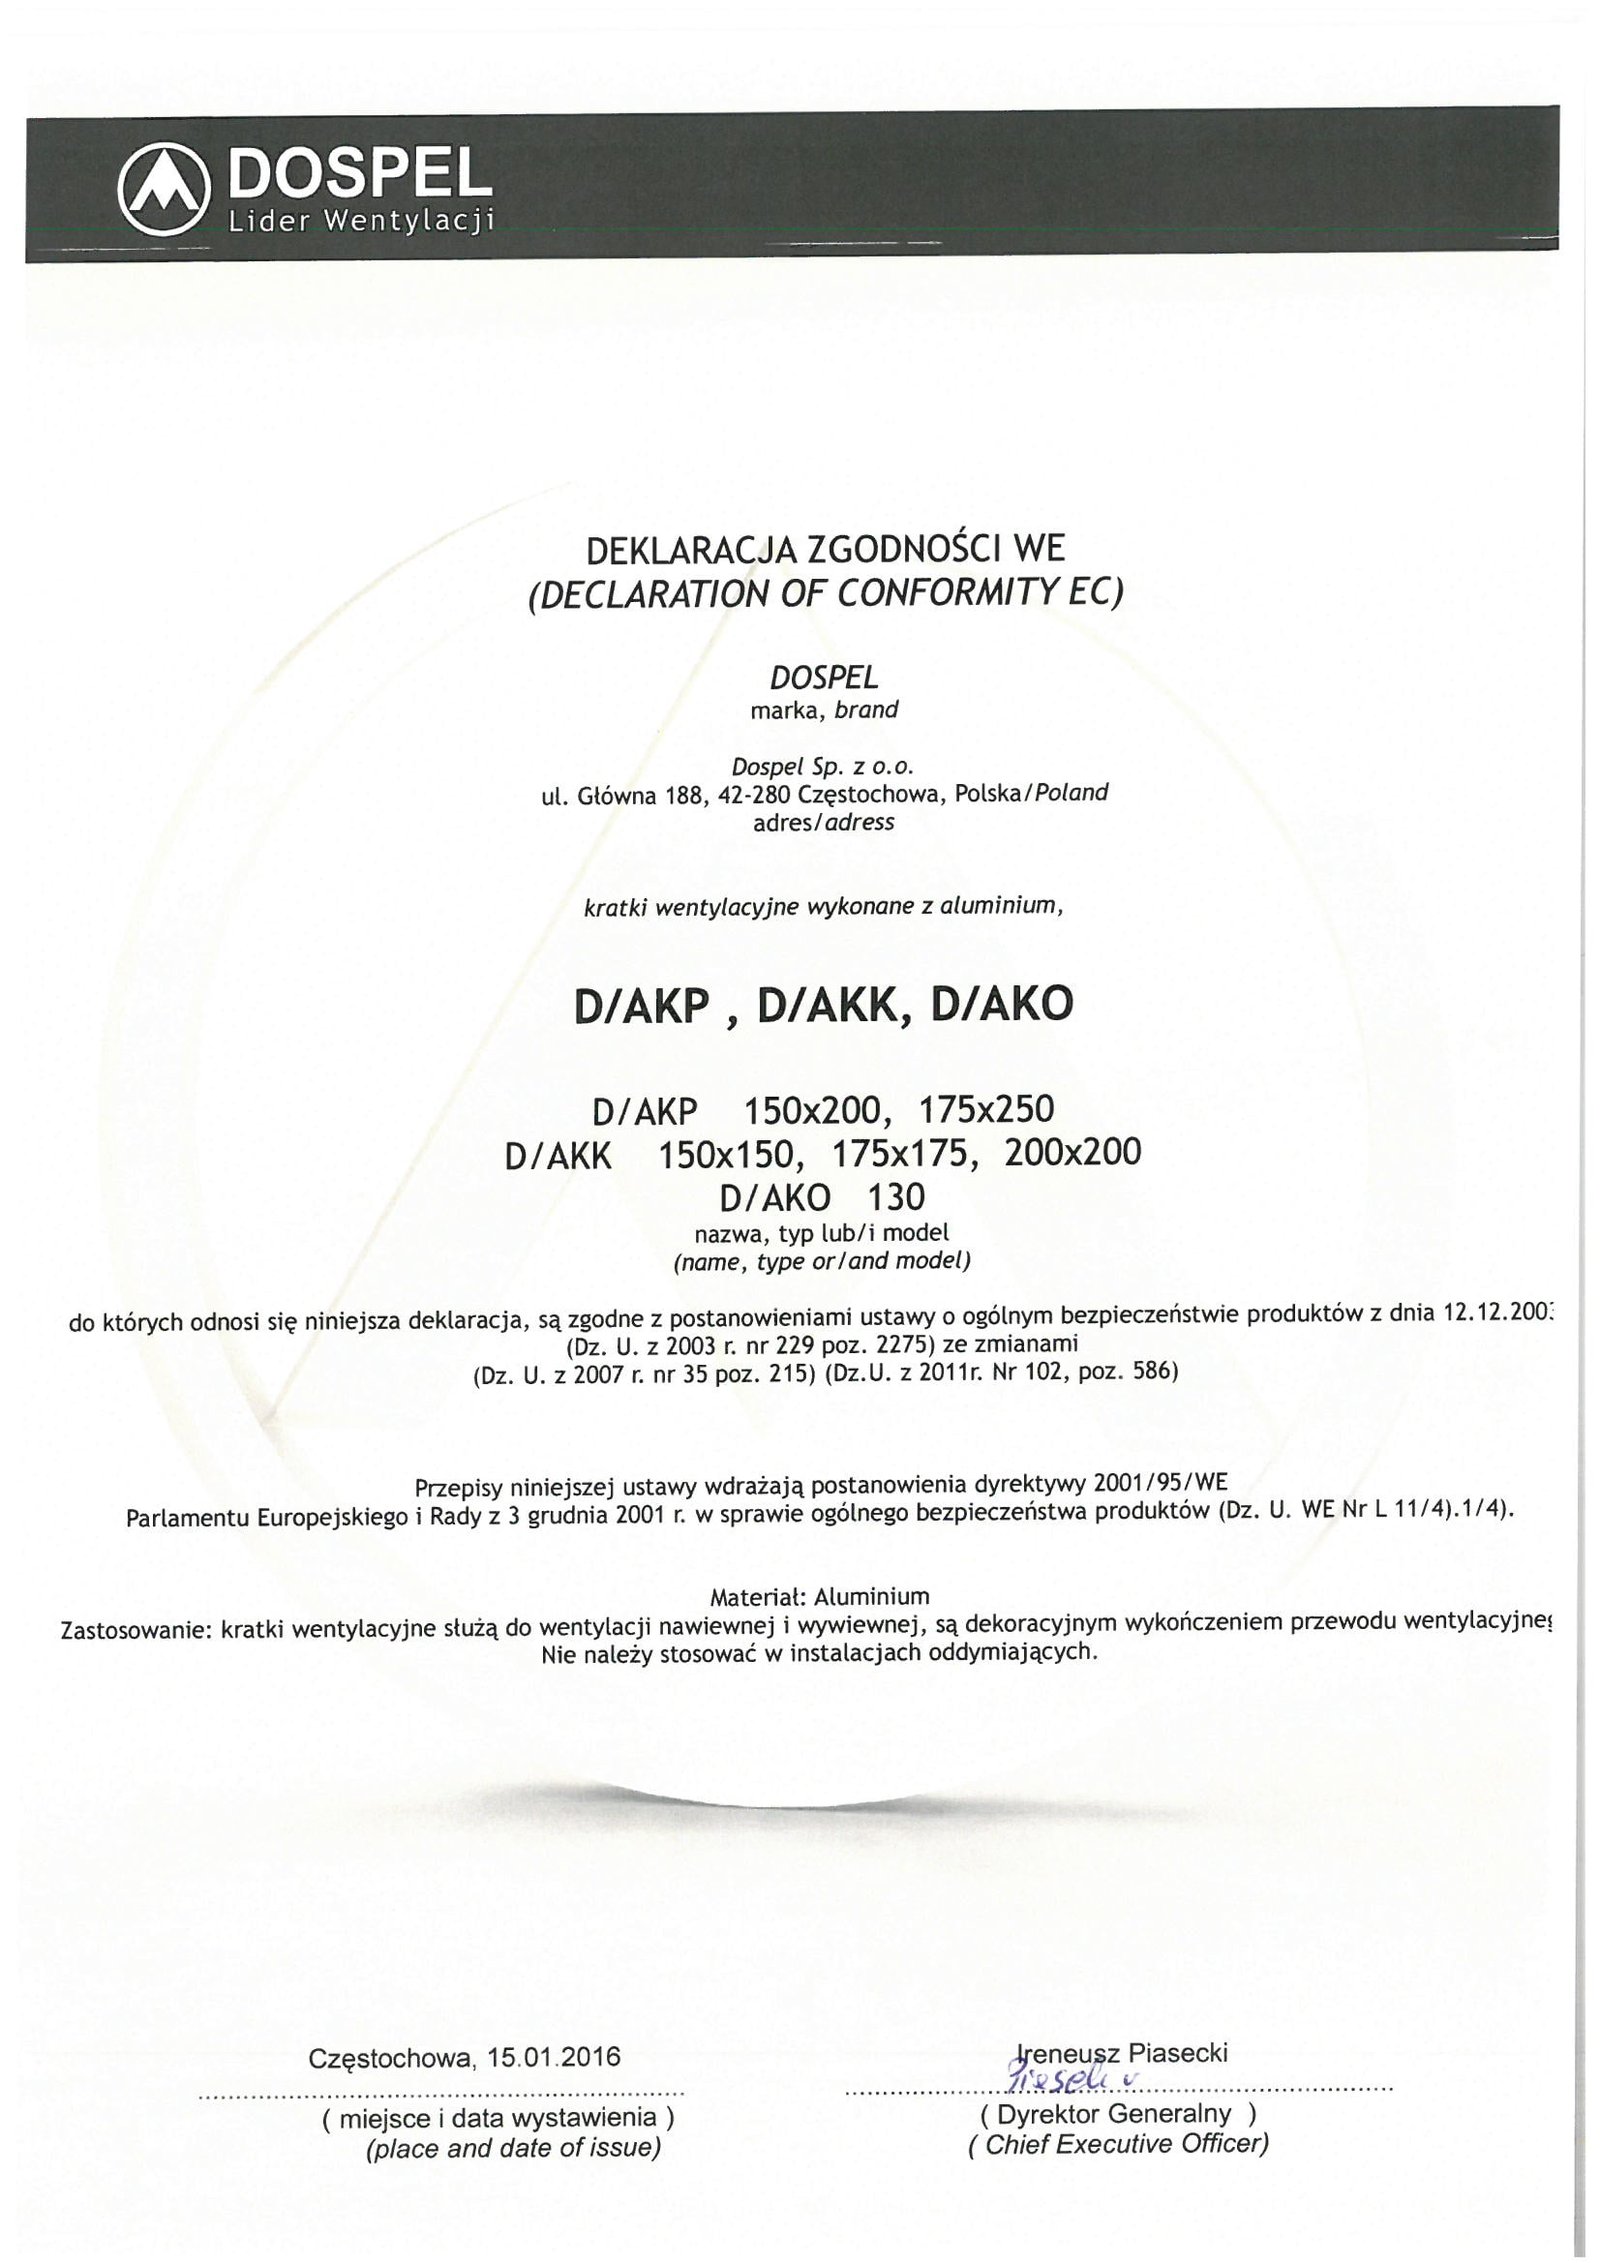 Kratki wentylacyjne aluminiowe D/AKP D/AKK D/AKO, certyfikat, deklaracja zgodności, producent wentylatorów, Dospel